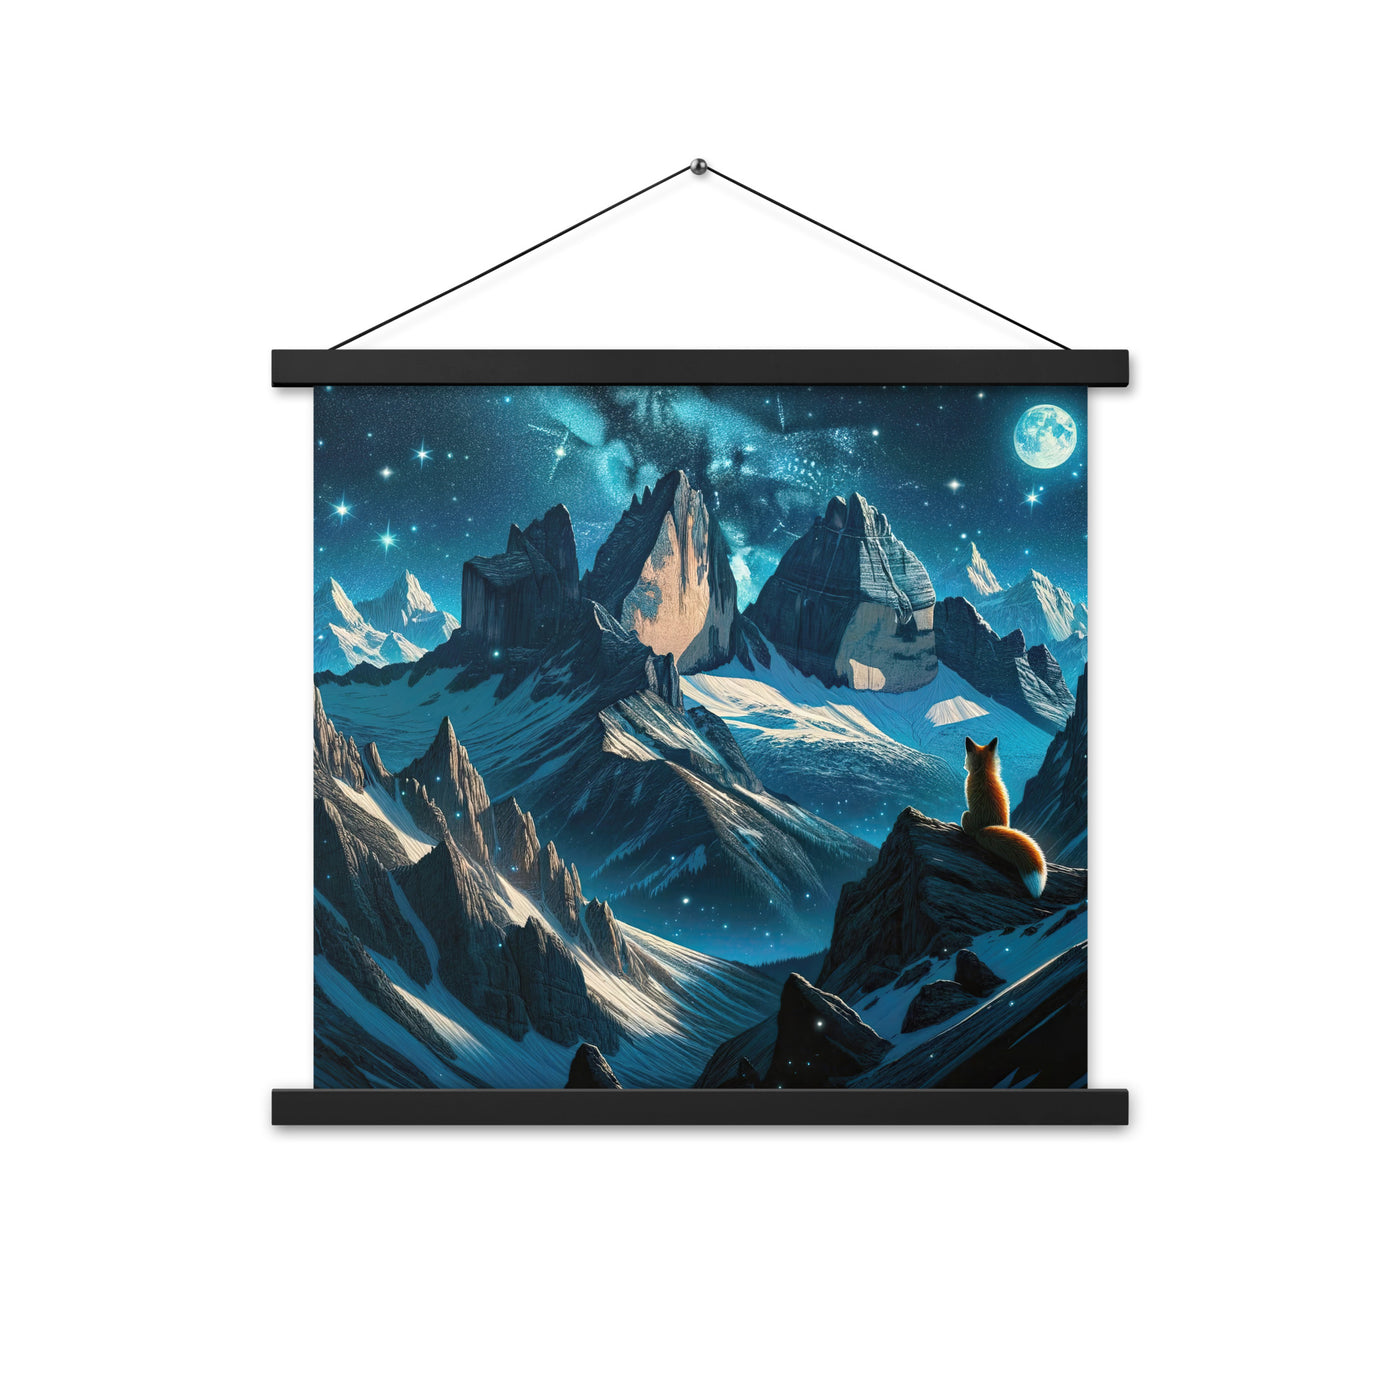 Fuchs in Alpennacht: Digitale Kunst der eisigen Berge im Mondlicht - Premium Poster mit Aufhängung camping xxx yyy zzz 45.7 x 45.7 cm